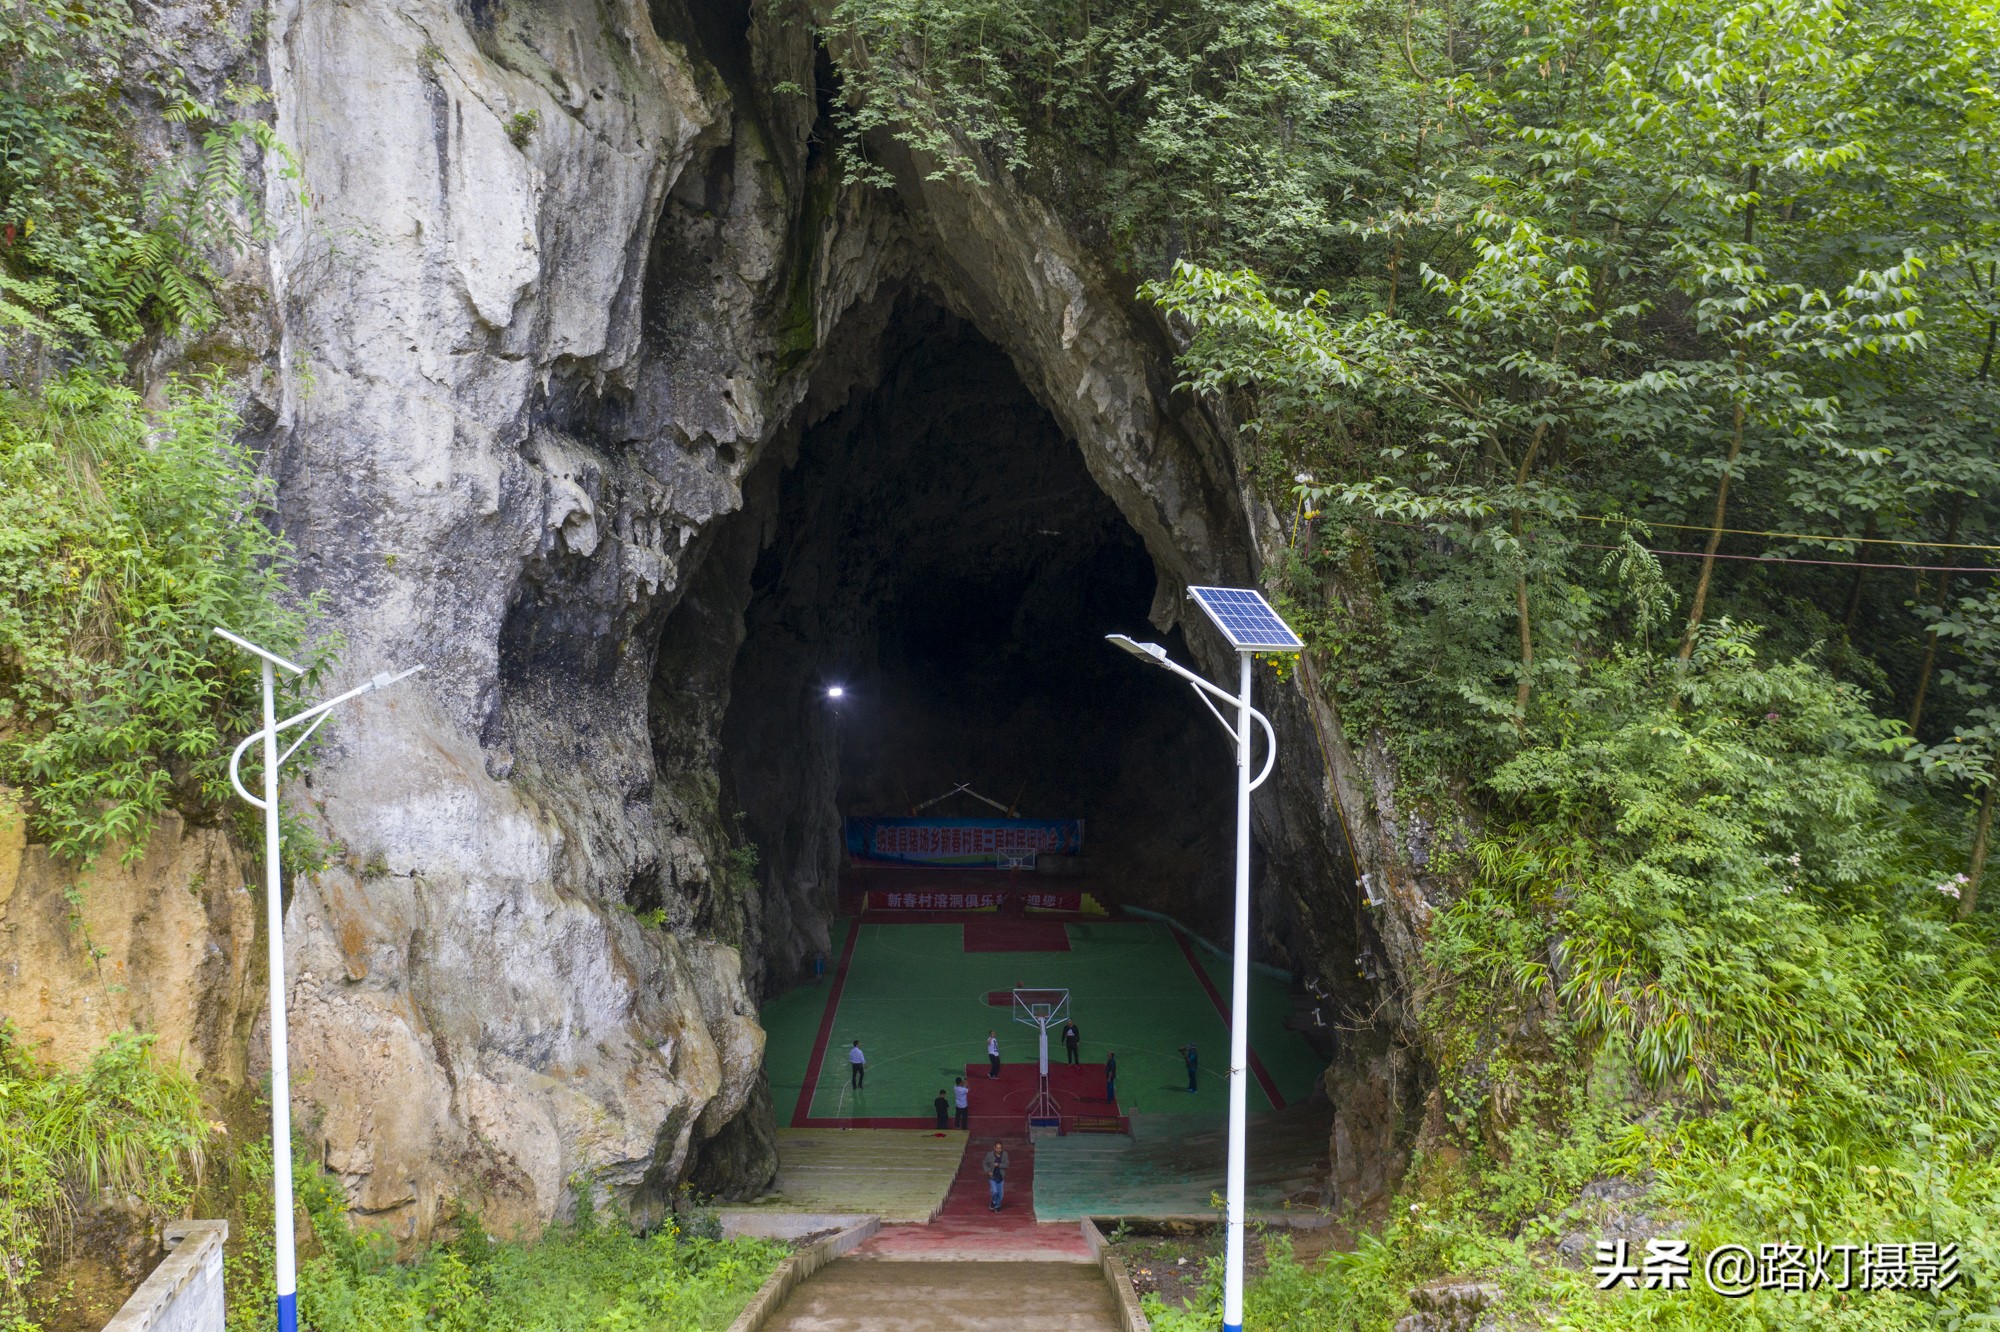 下水径篮球场(贵州村民自筹24万元，在巨型溶洞内建了篮球场，世界上绝无仅有)